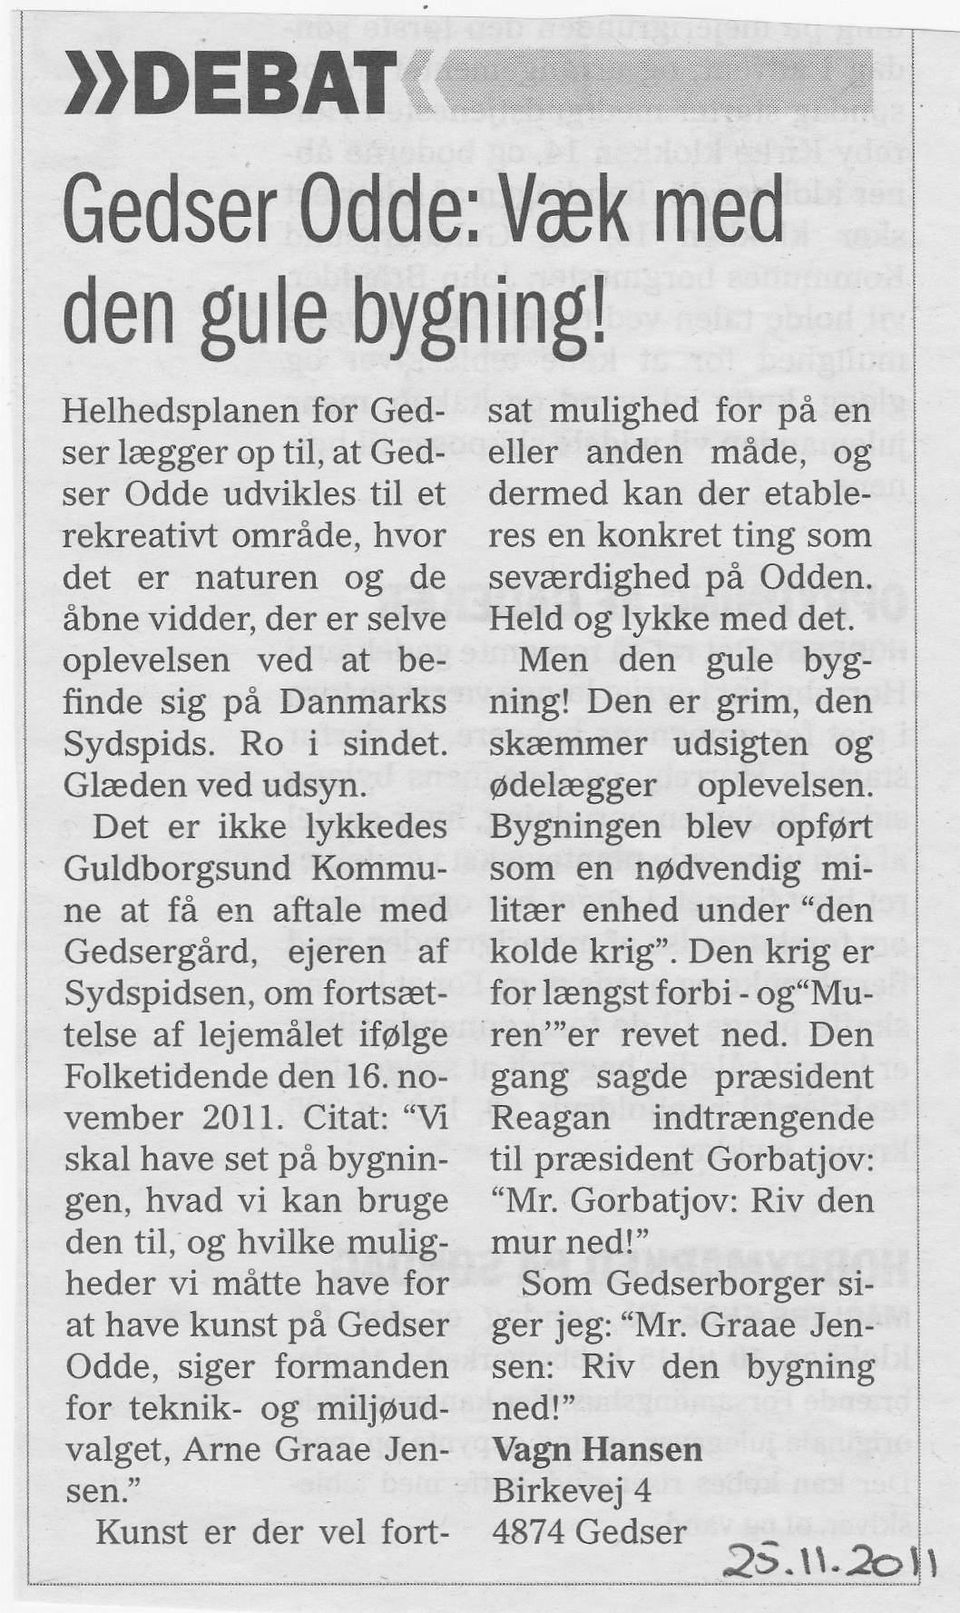 Ro i sindet. Glæden ved udsyn. Det er ikke lykkedes Guldborgsund Kommune at få en aftale med Gedsergård, ejeren af Sydspidsen, om fortsættelse af lejemålet ifllge Folketidende den 16. november 2011.